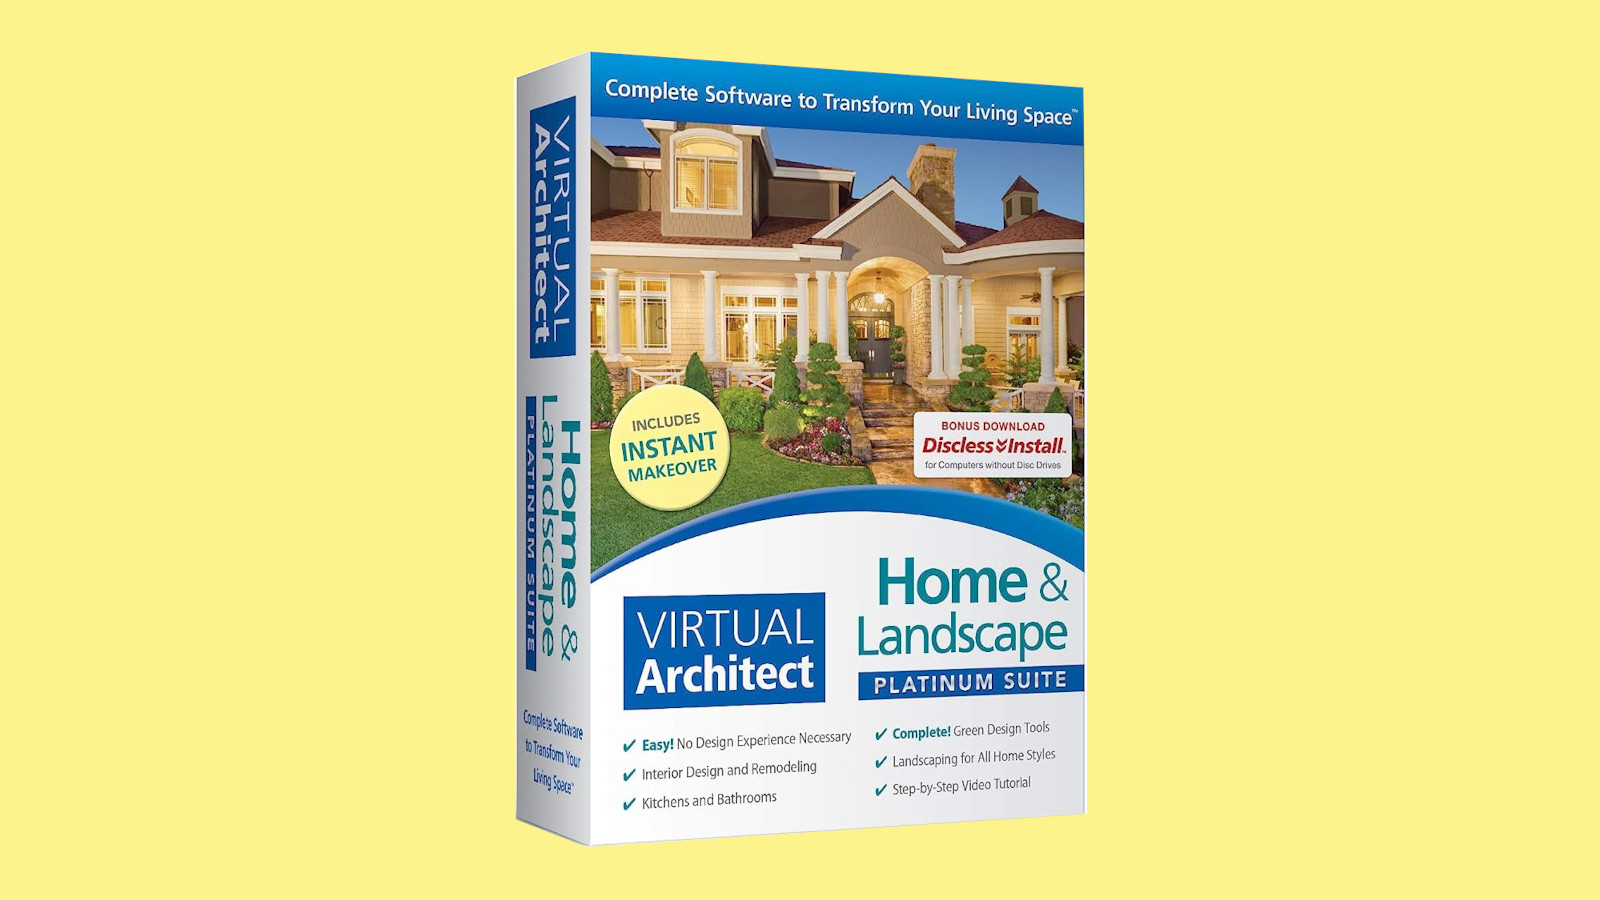 [$ 103.45] Virtual Architect Home & Landscape Platinum Suite CD Key